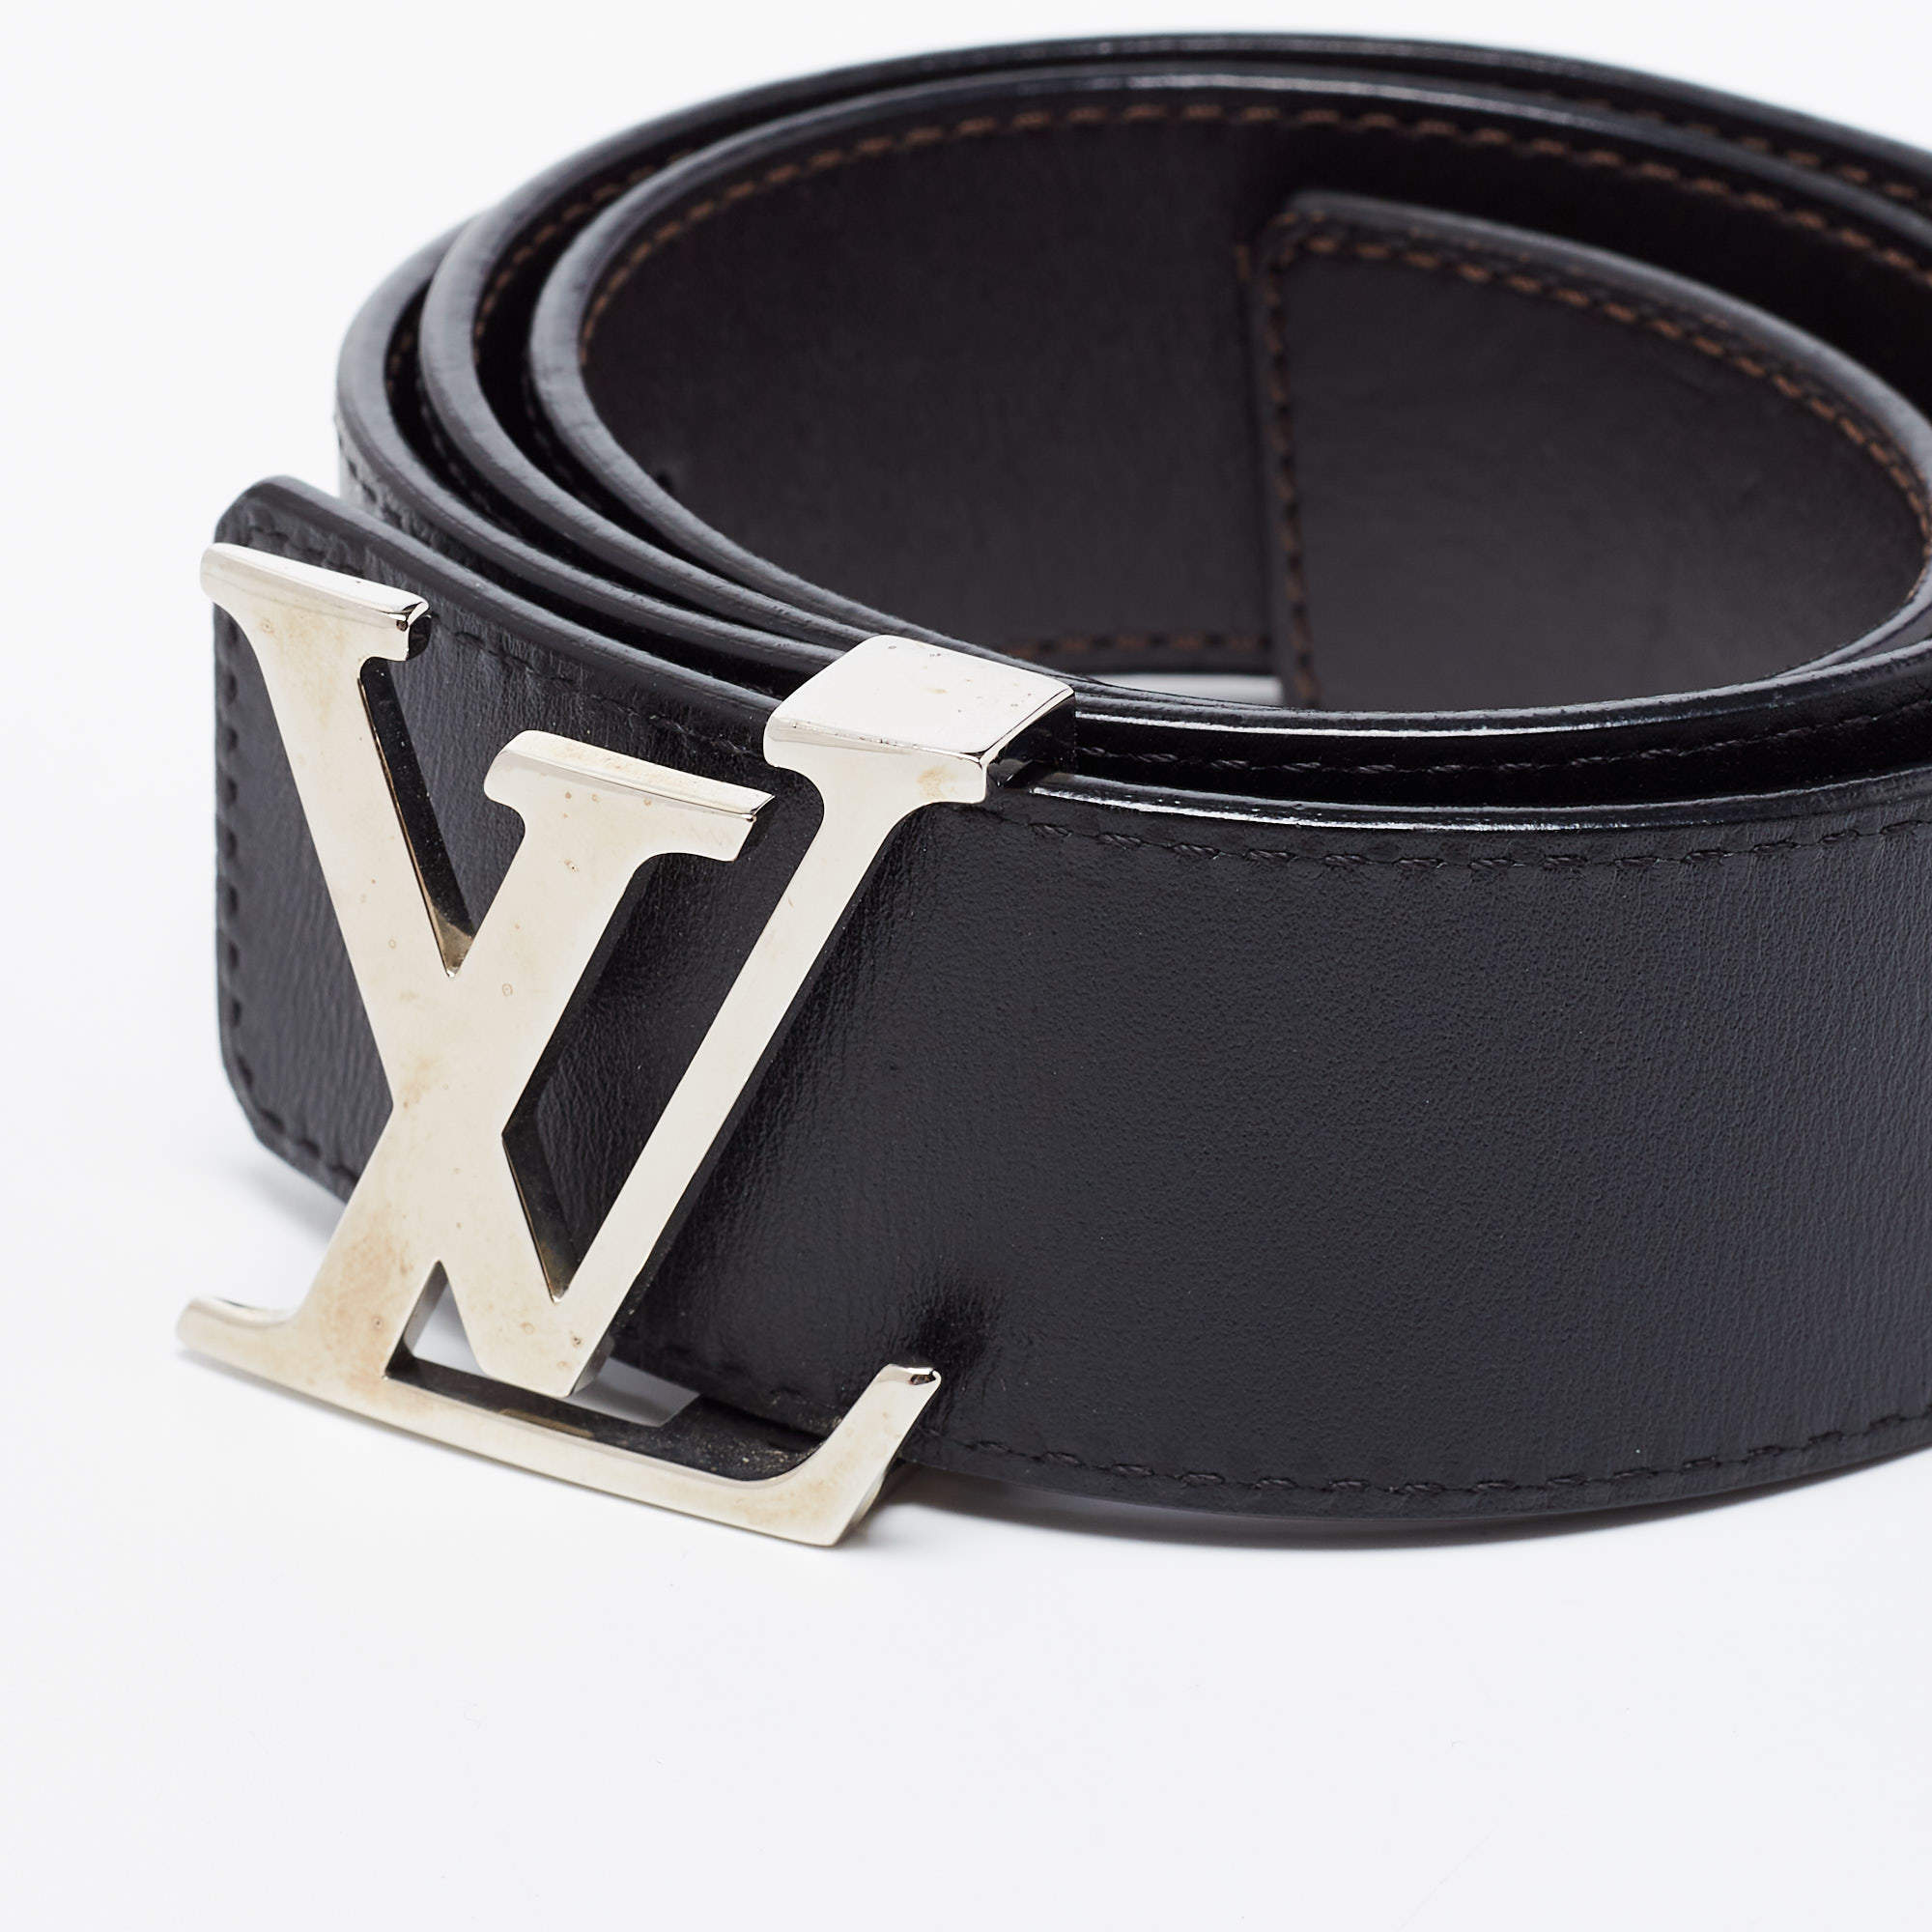 Louis Vuitton Red/Galet Leather Initiales Reversible Belt 90 CM Louis  Vuitton